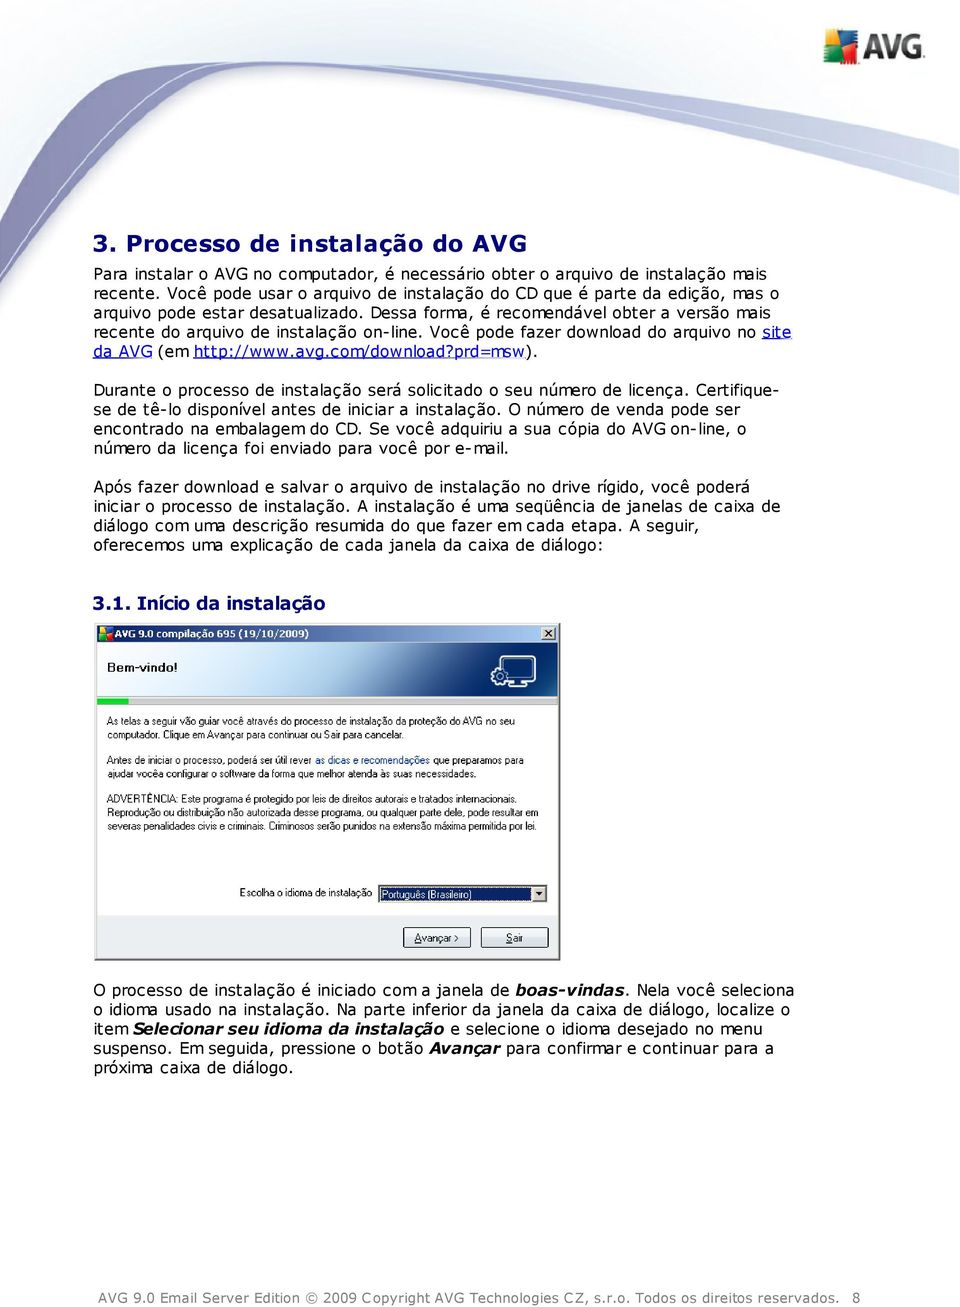 Você pode fazer download do arquivo no site da AVG (em http://www.avg.com/download?prd=msw). Durante o processo de instalação será solicitado o seu número de licença.